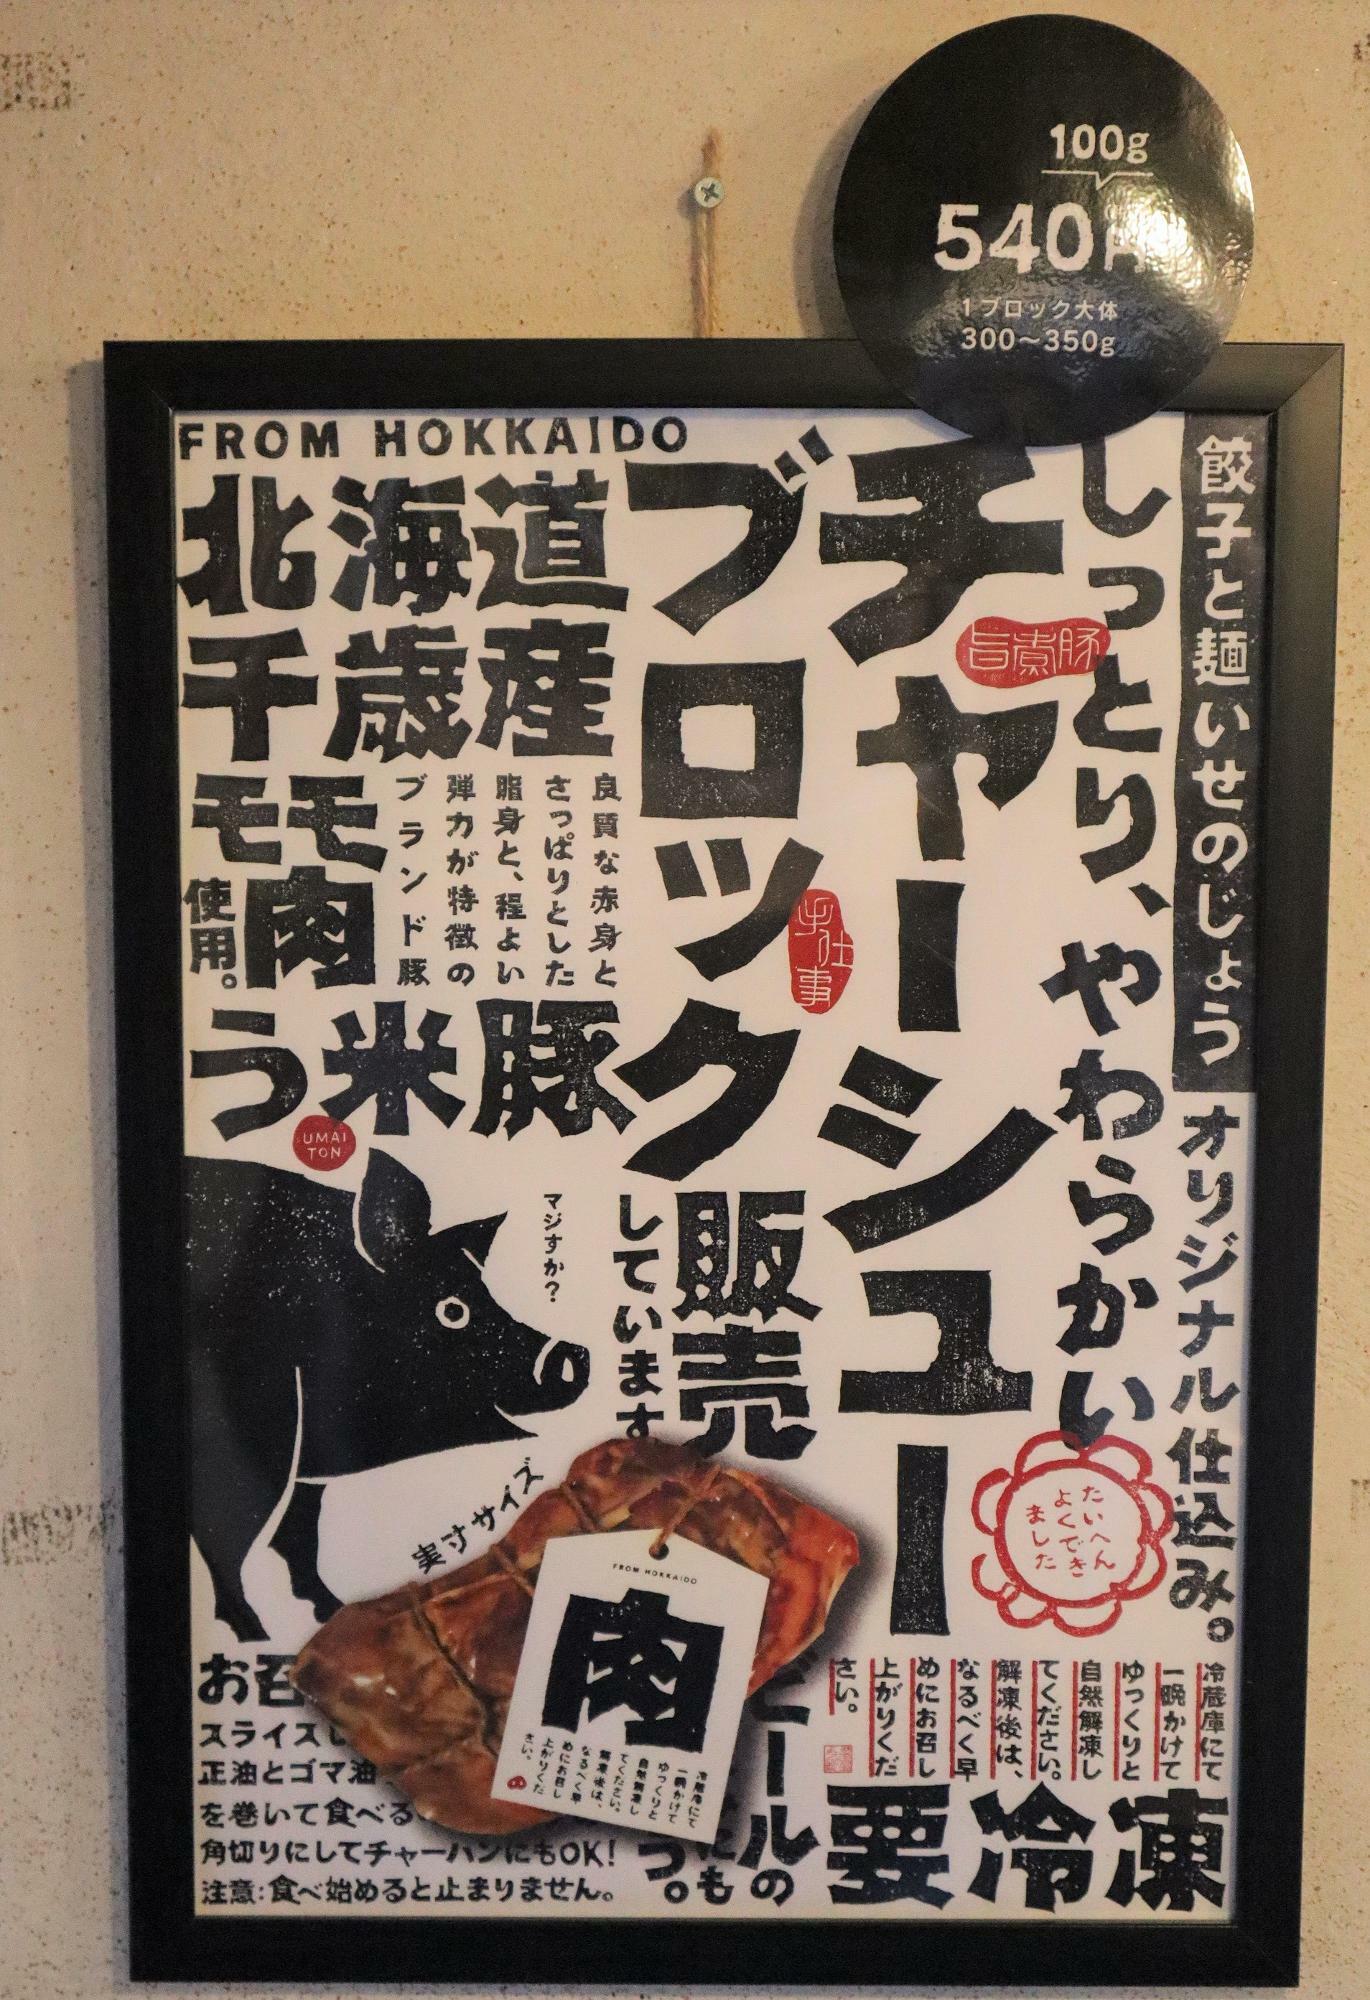 デザインがとてもかわいいですね。【 原材料 】北海道千歳産う米豚使用【 内容量 】１ブロック300 - 350g【 Price 】100g ／ 540円（税込）